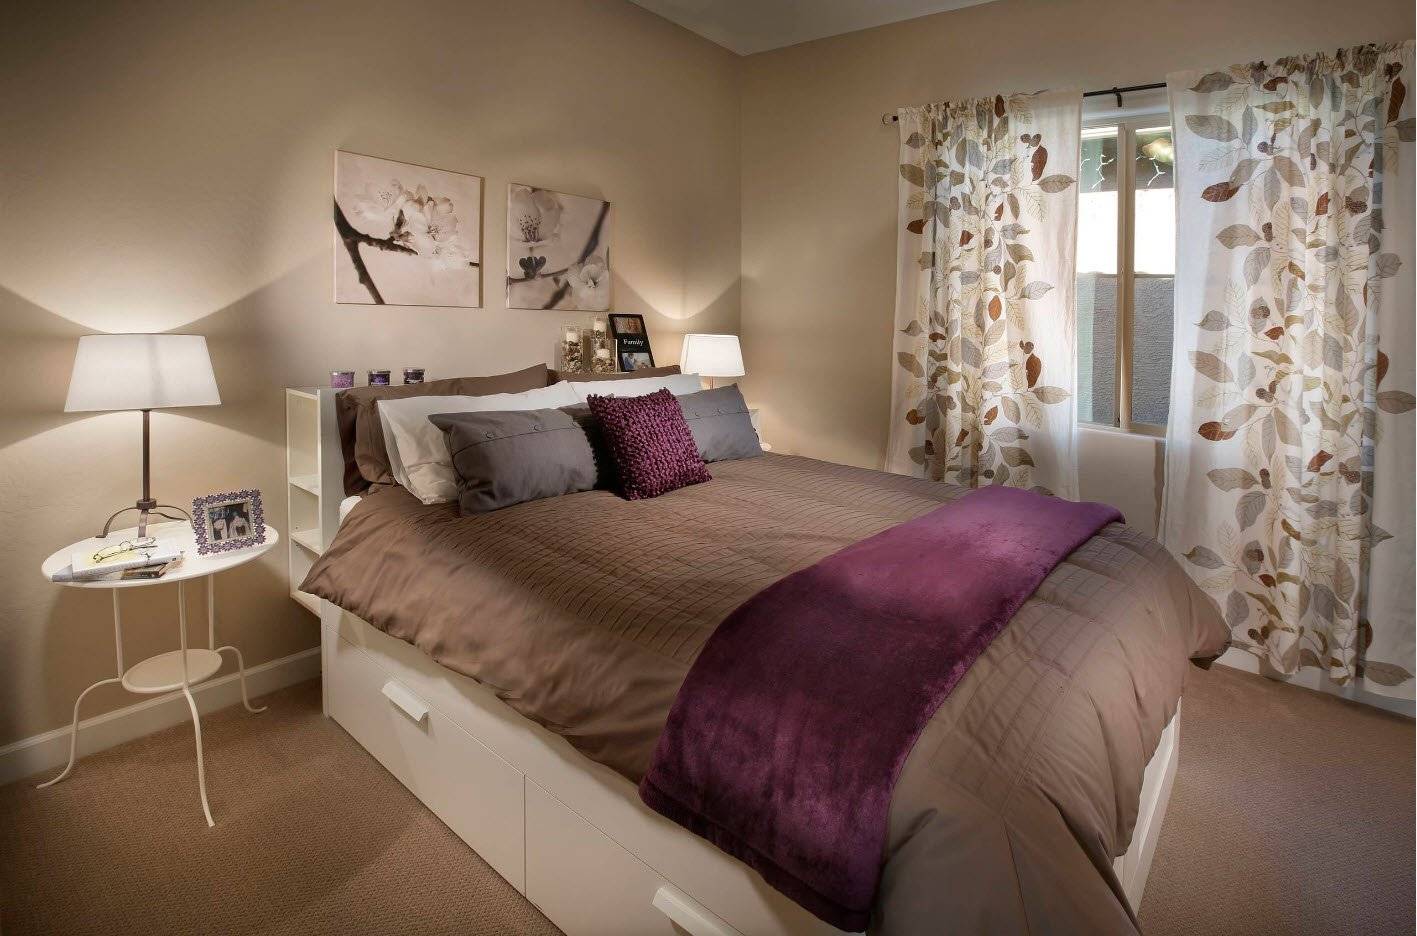 Спальня в серых тонах - модные варианты и правильный выбор дизайна спален (140 фото)